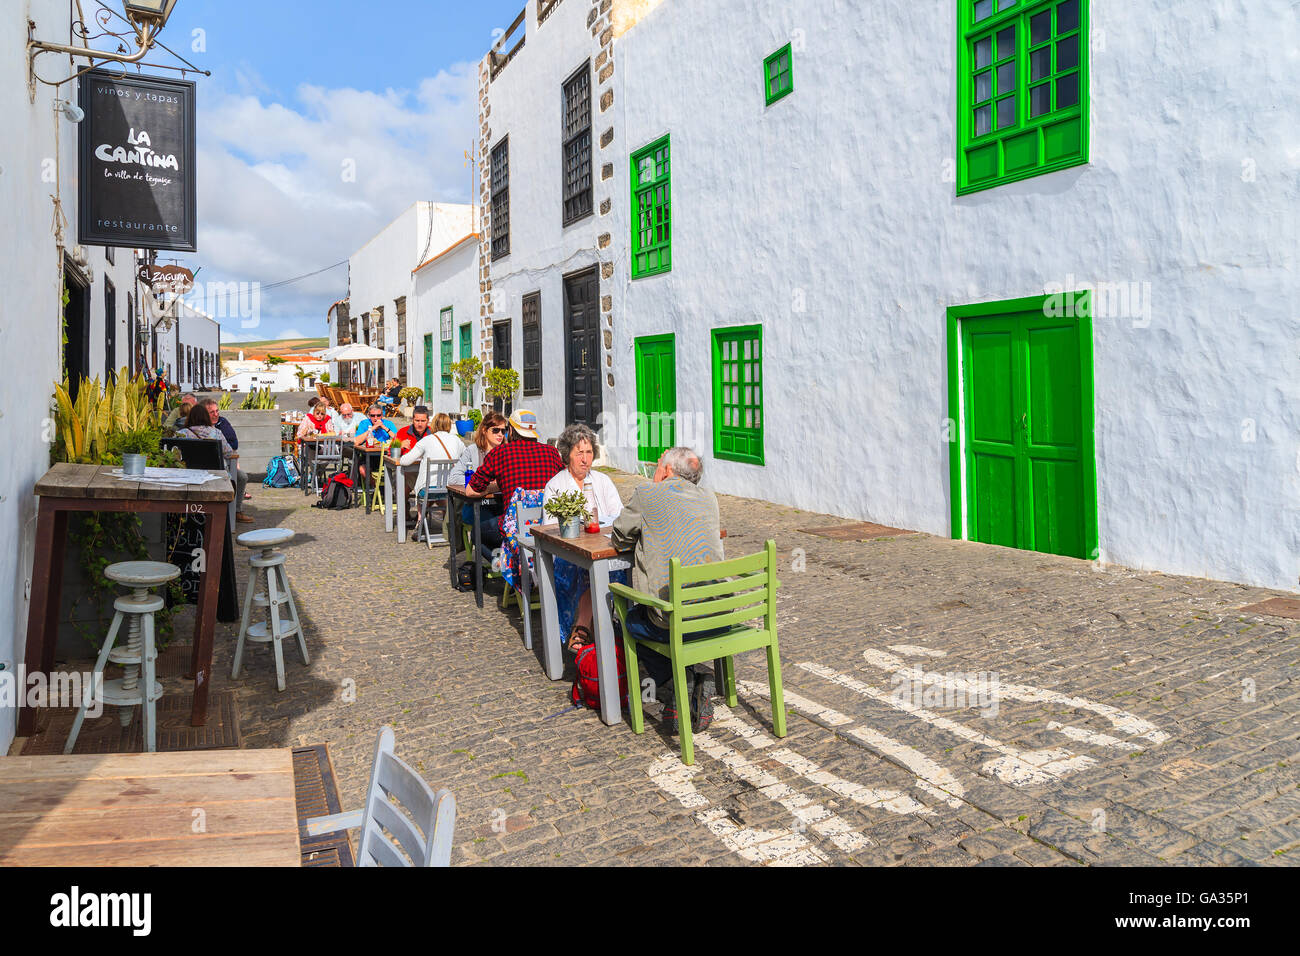 TEGUISE TOWN, Lanzarote Island - Jan 14, 2015: turisti seduti in un ristorante locale in città vecchia di Teguise. Questa città è ex capitale dell'isola di Lanzarote e è molto popolare attrazione per vedere. Foto Stock